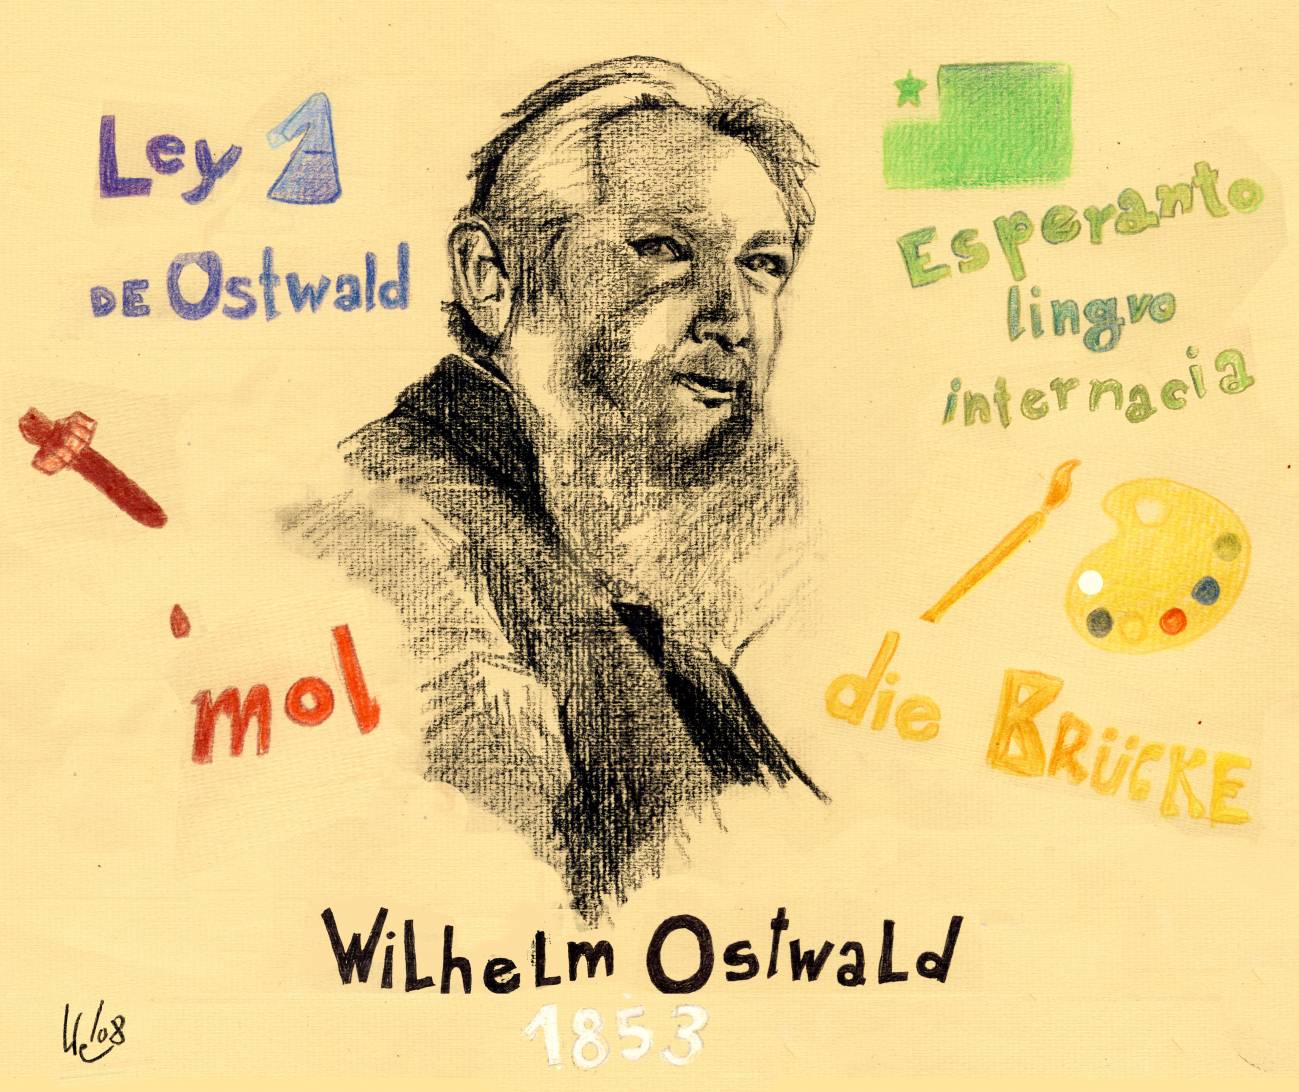 2 de septiembre 1953: Nace Wilhelm Ostwald, premio Nobel de Química en 1909, creador y filósofo alemán